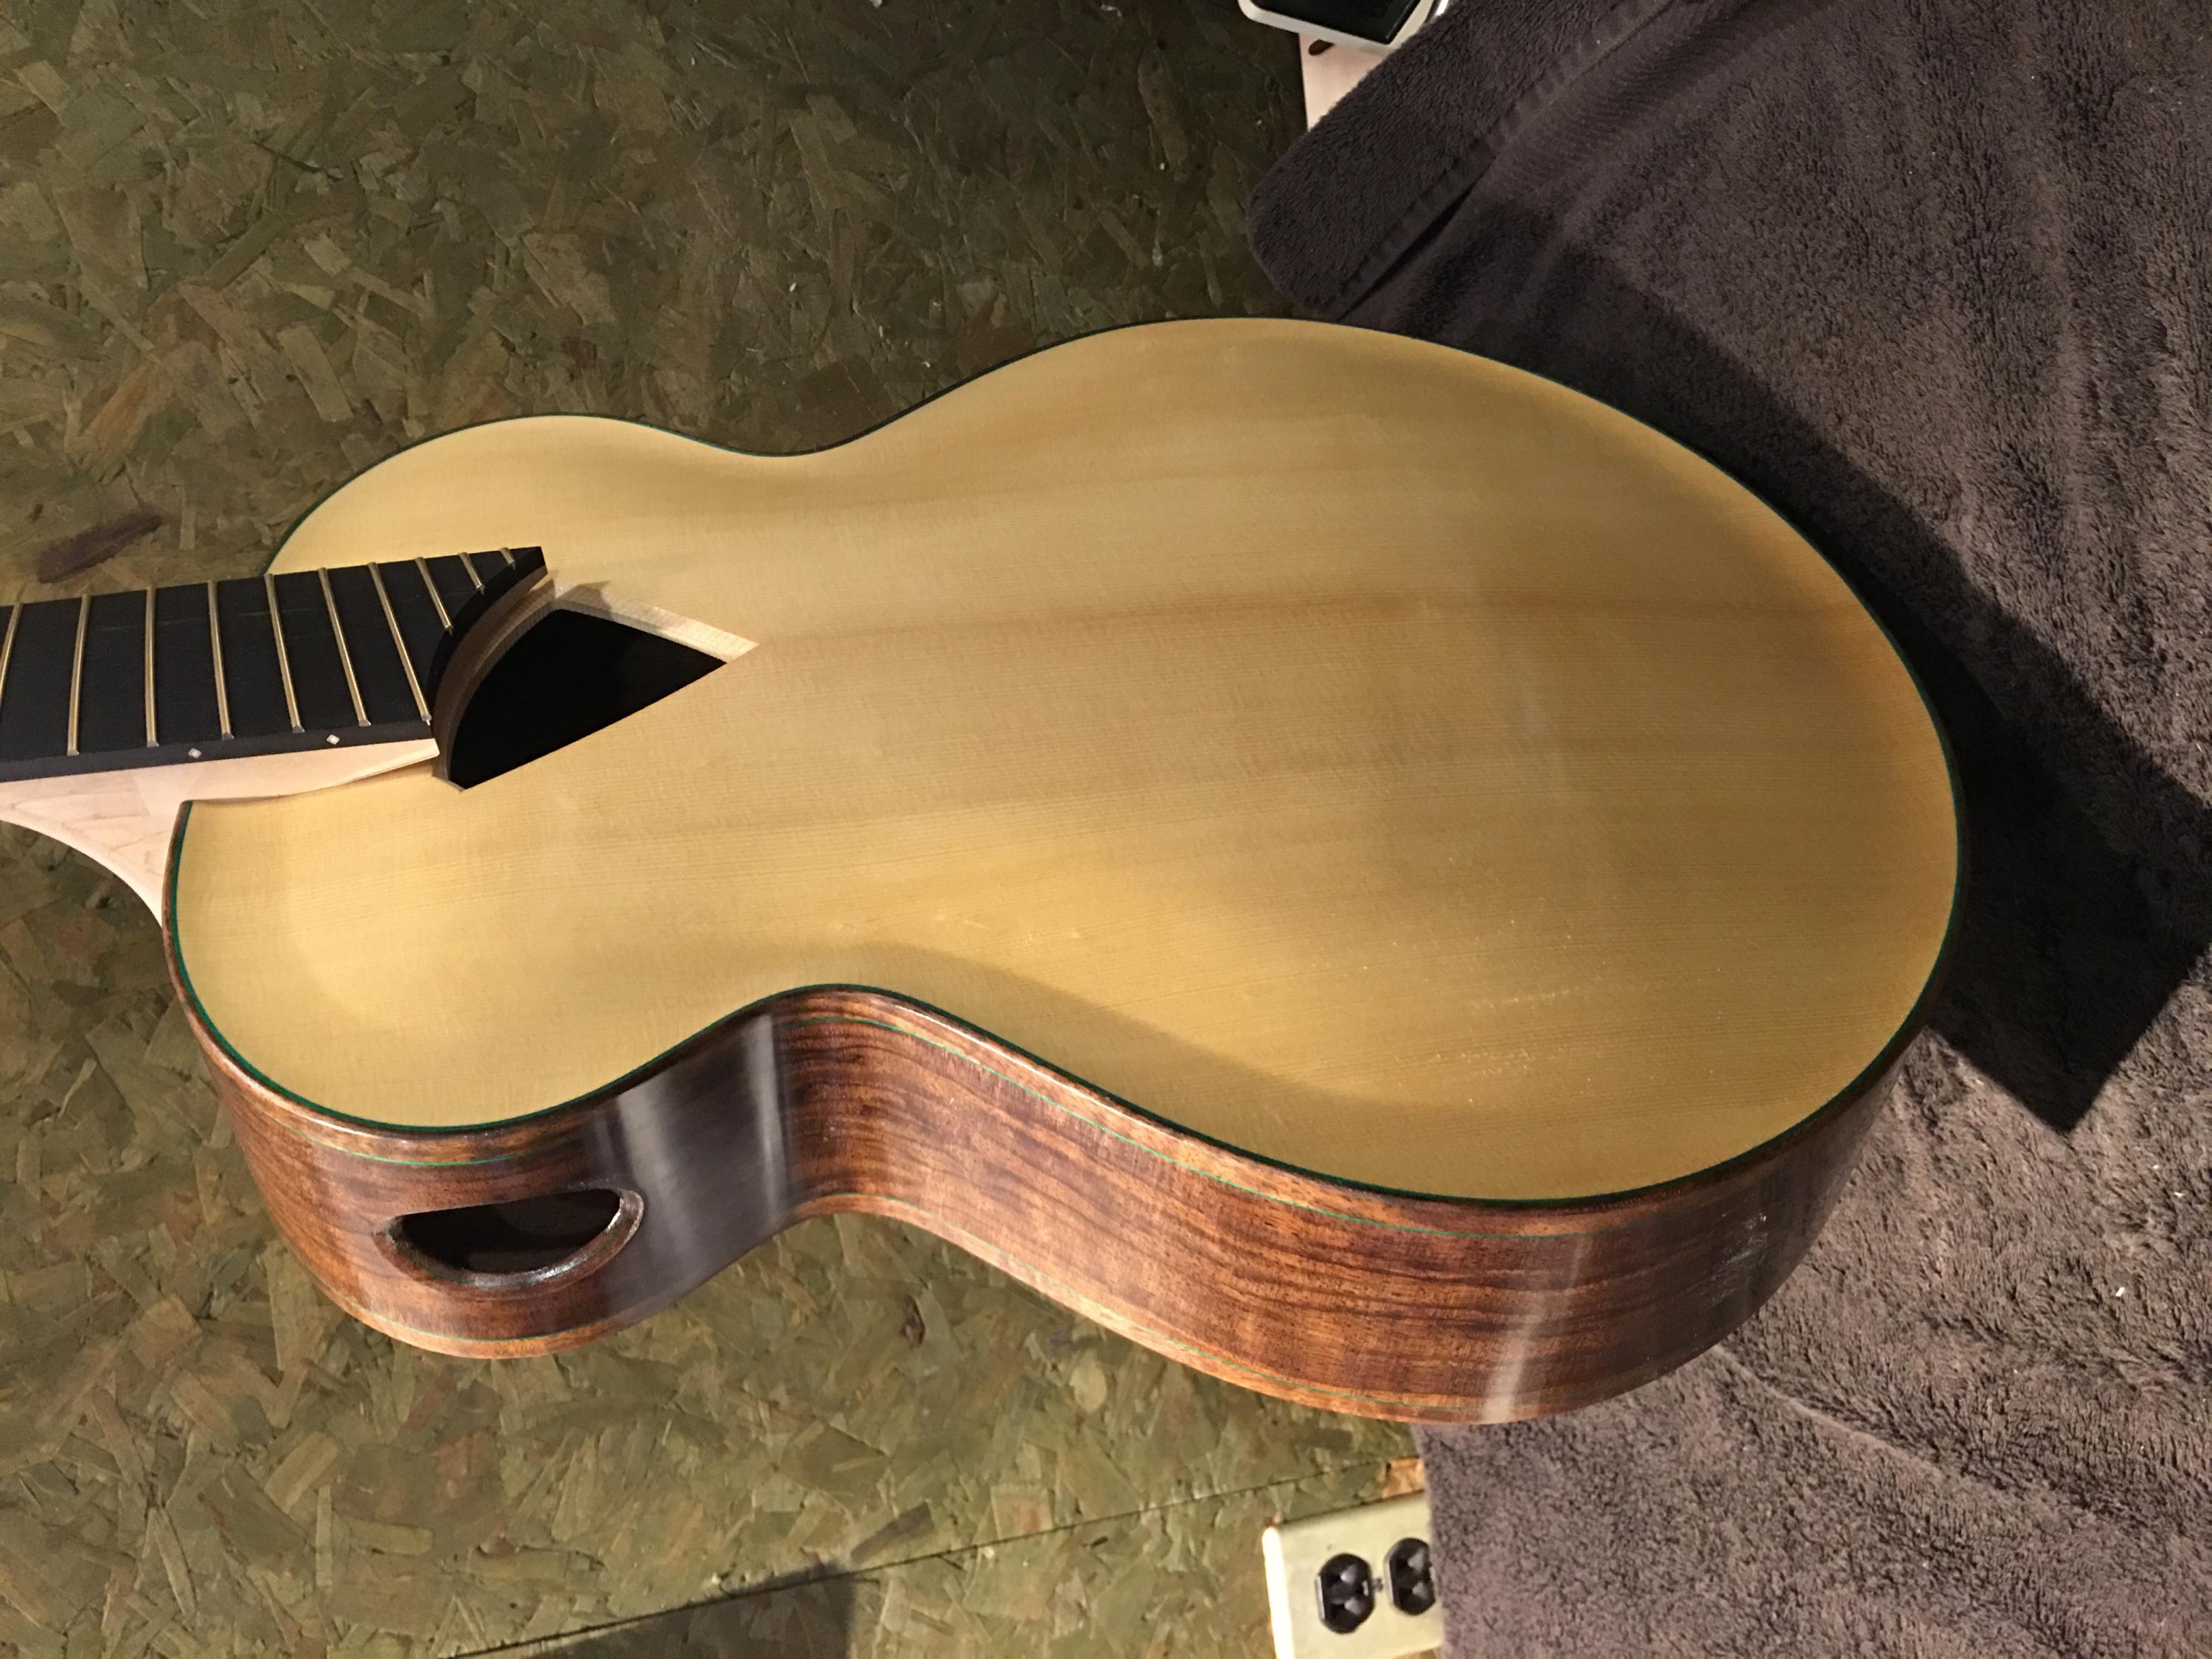 New Guitar Build (2 more months) Erich Solomon 8 string acoustic-e3597401-97eb-4d7d-90eb-9bdc357e4e24-jpg